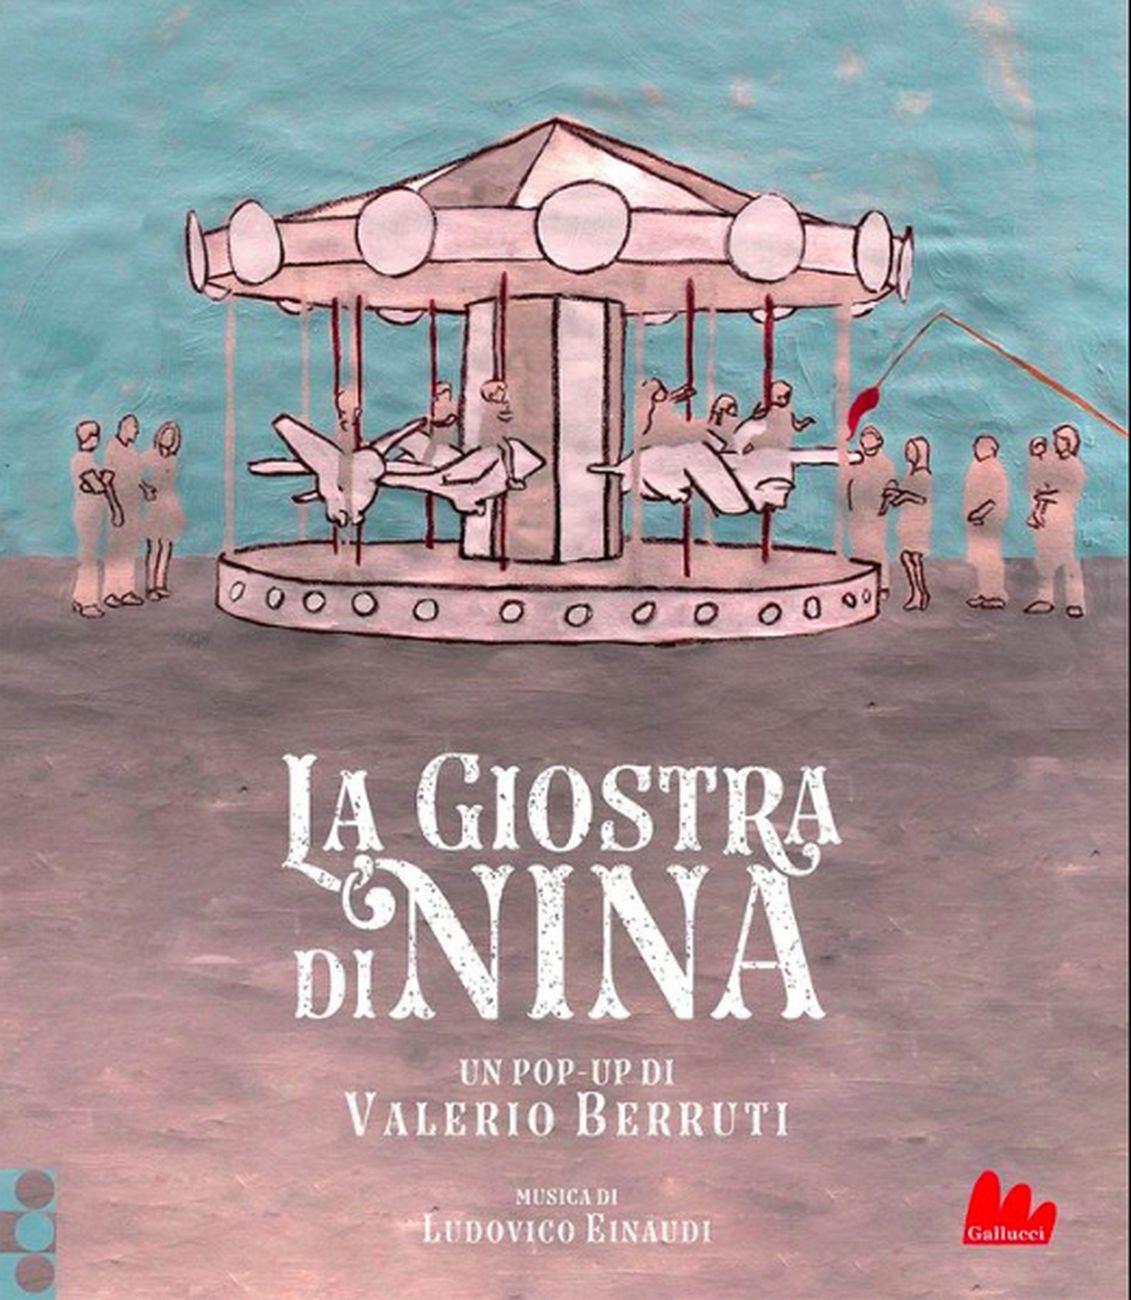 Valerio Berruti & Ludovico Einaudi – La giostra di Nina (Gallucci, Roma 2019)